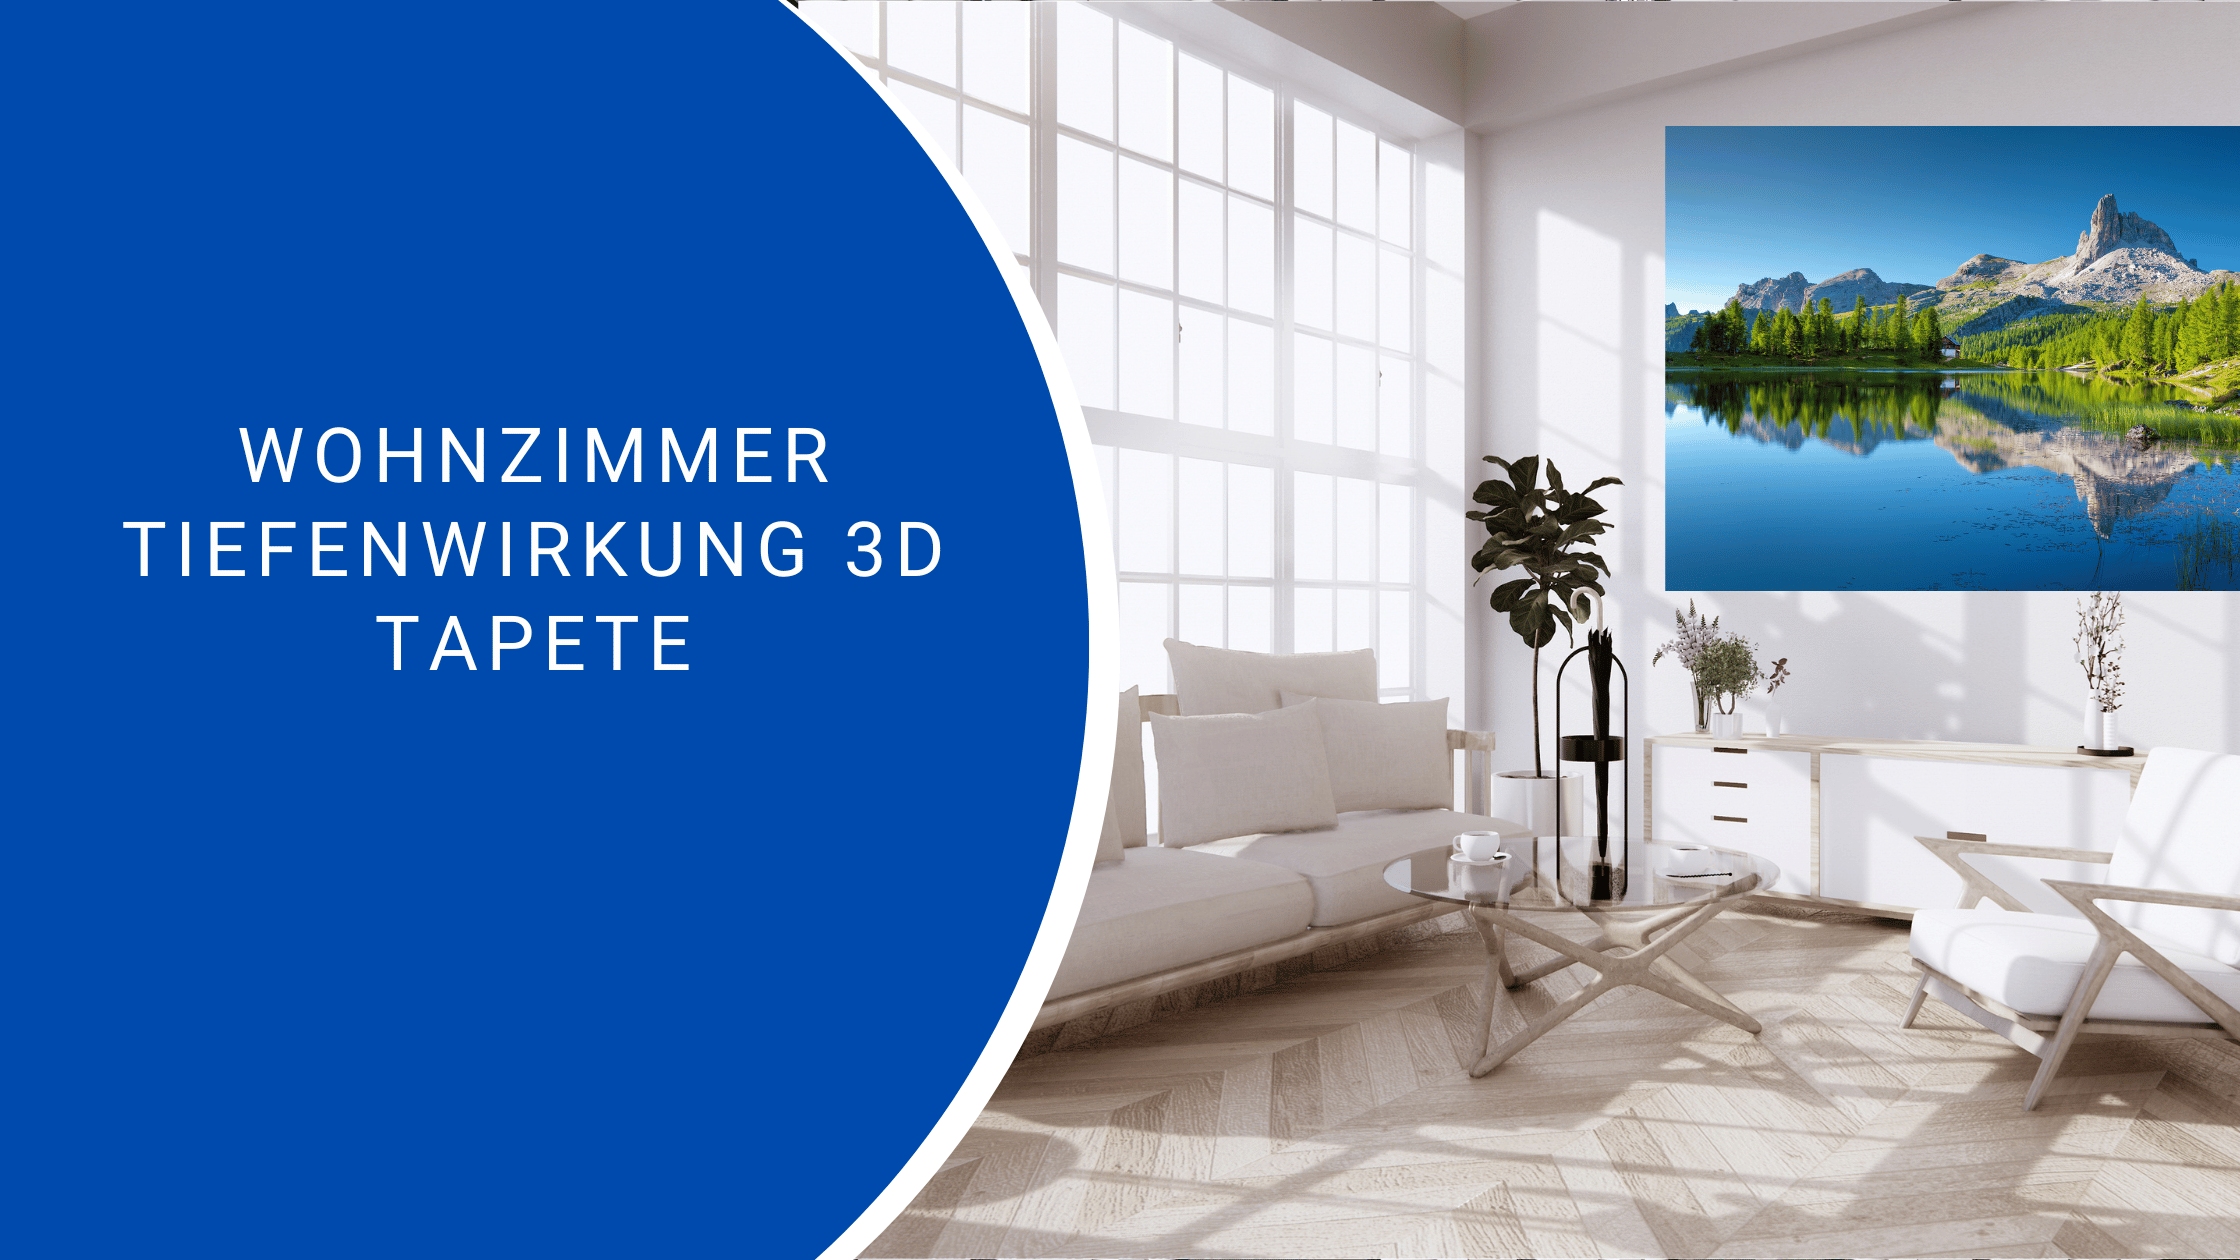 Wohnzimmer Tiefenwirkung 3D